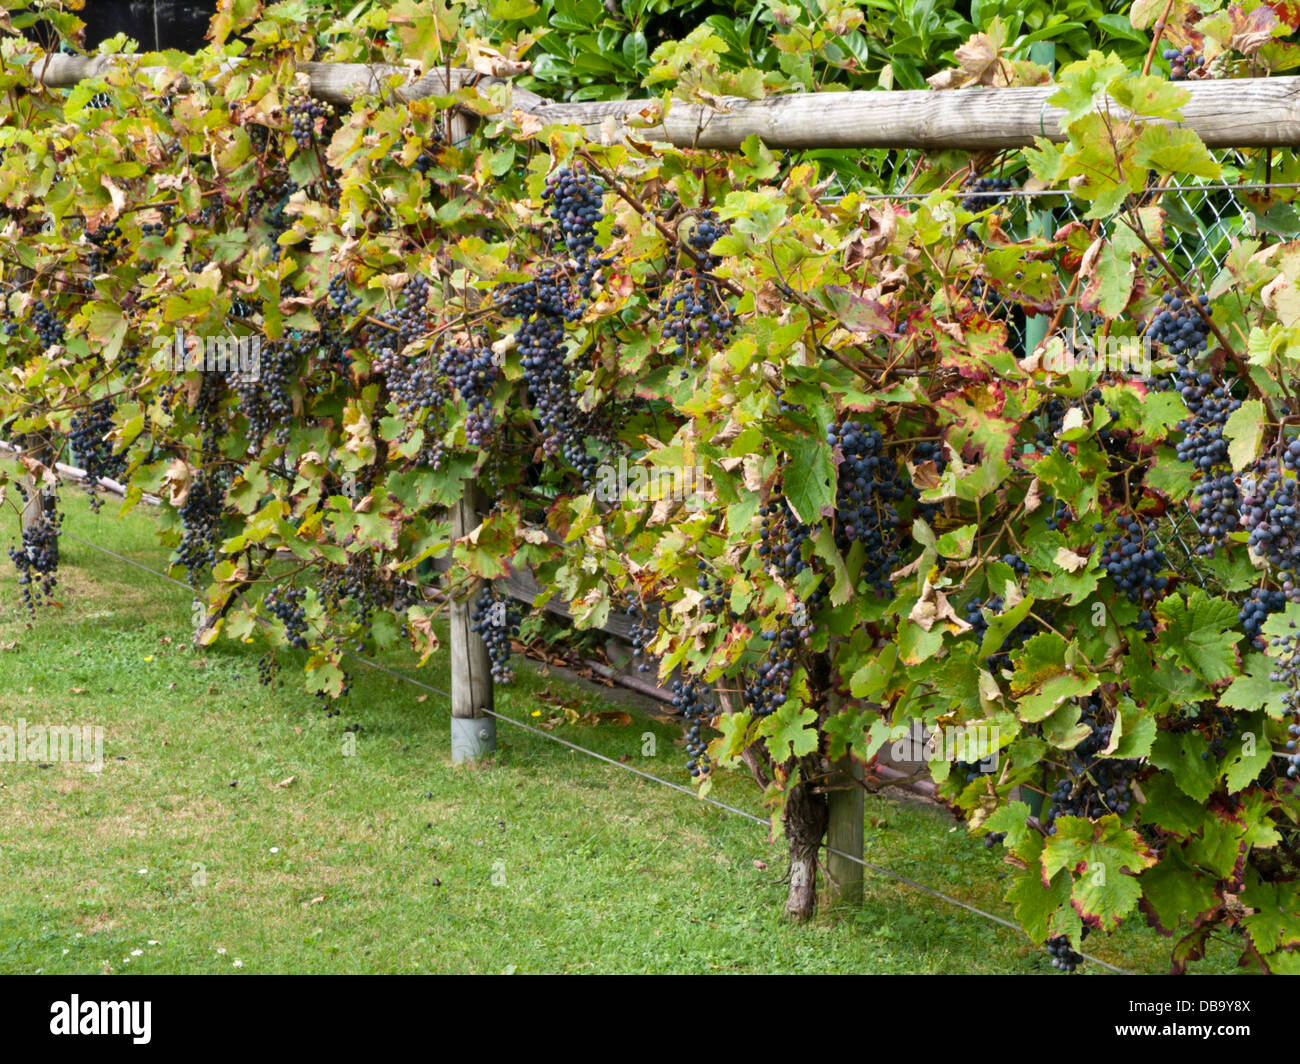 Grape vine (Vitis vinifera) Stock Photo